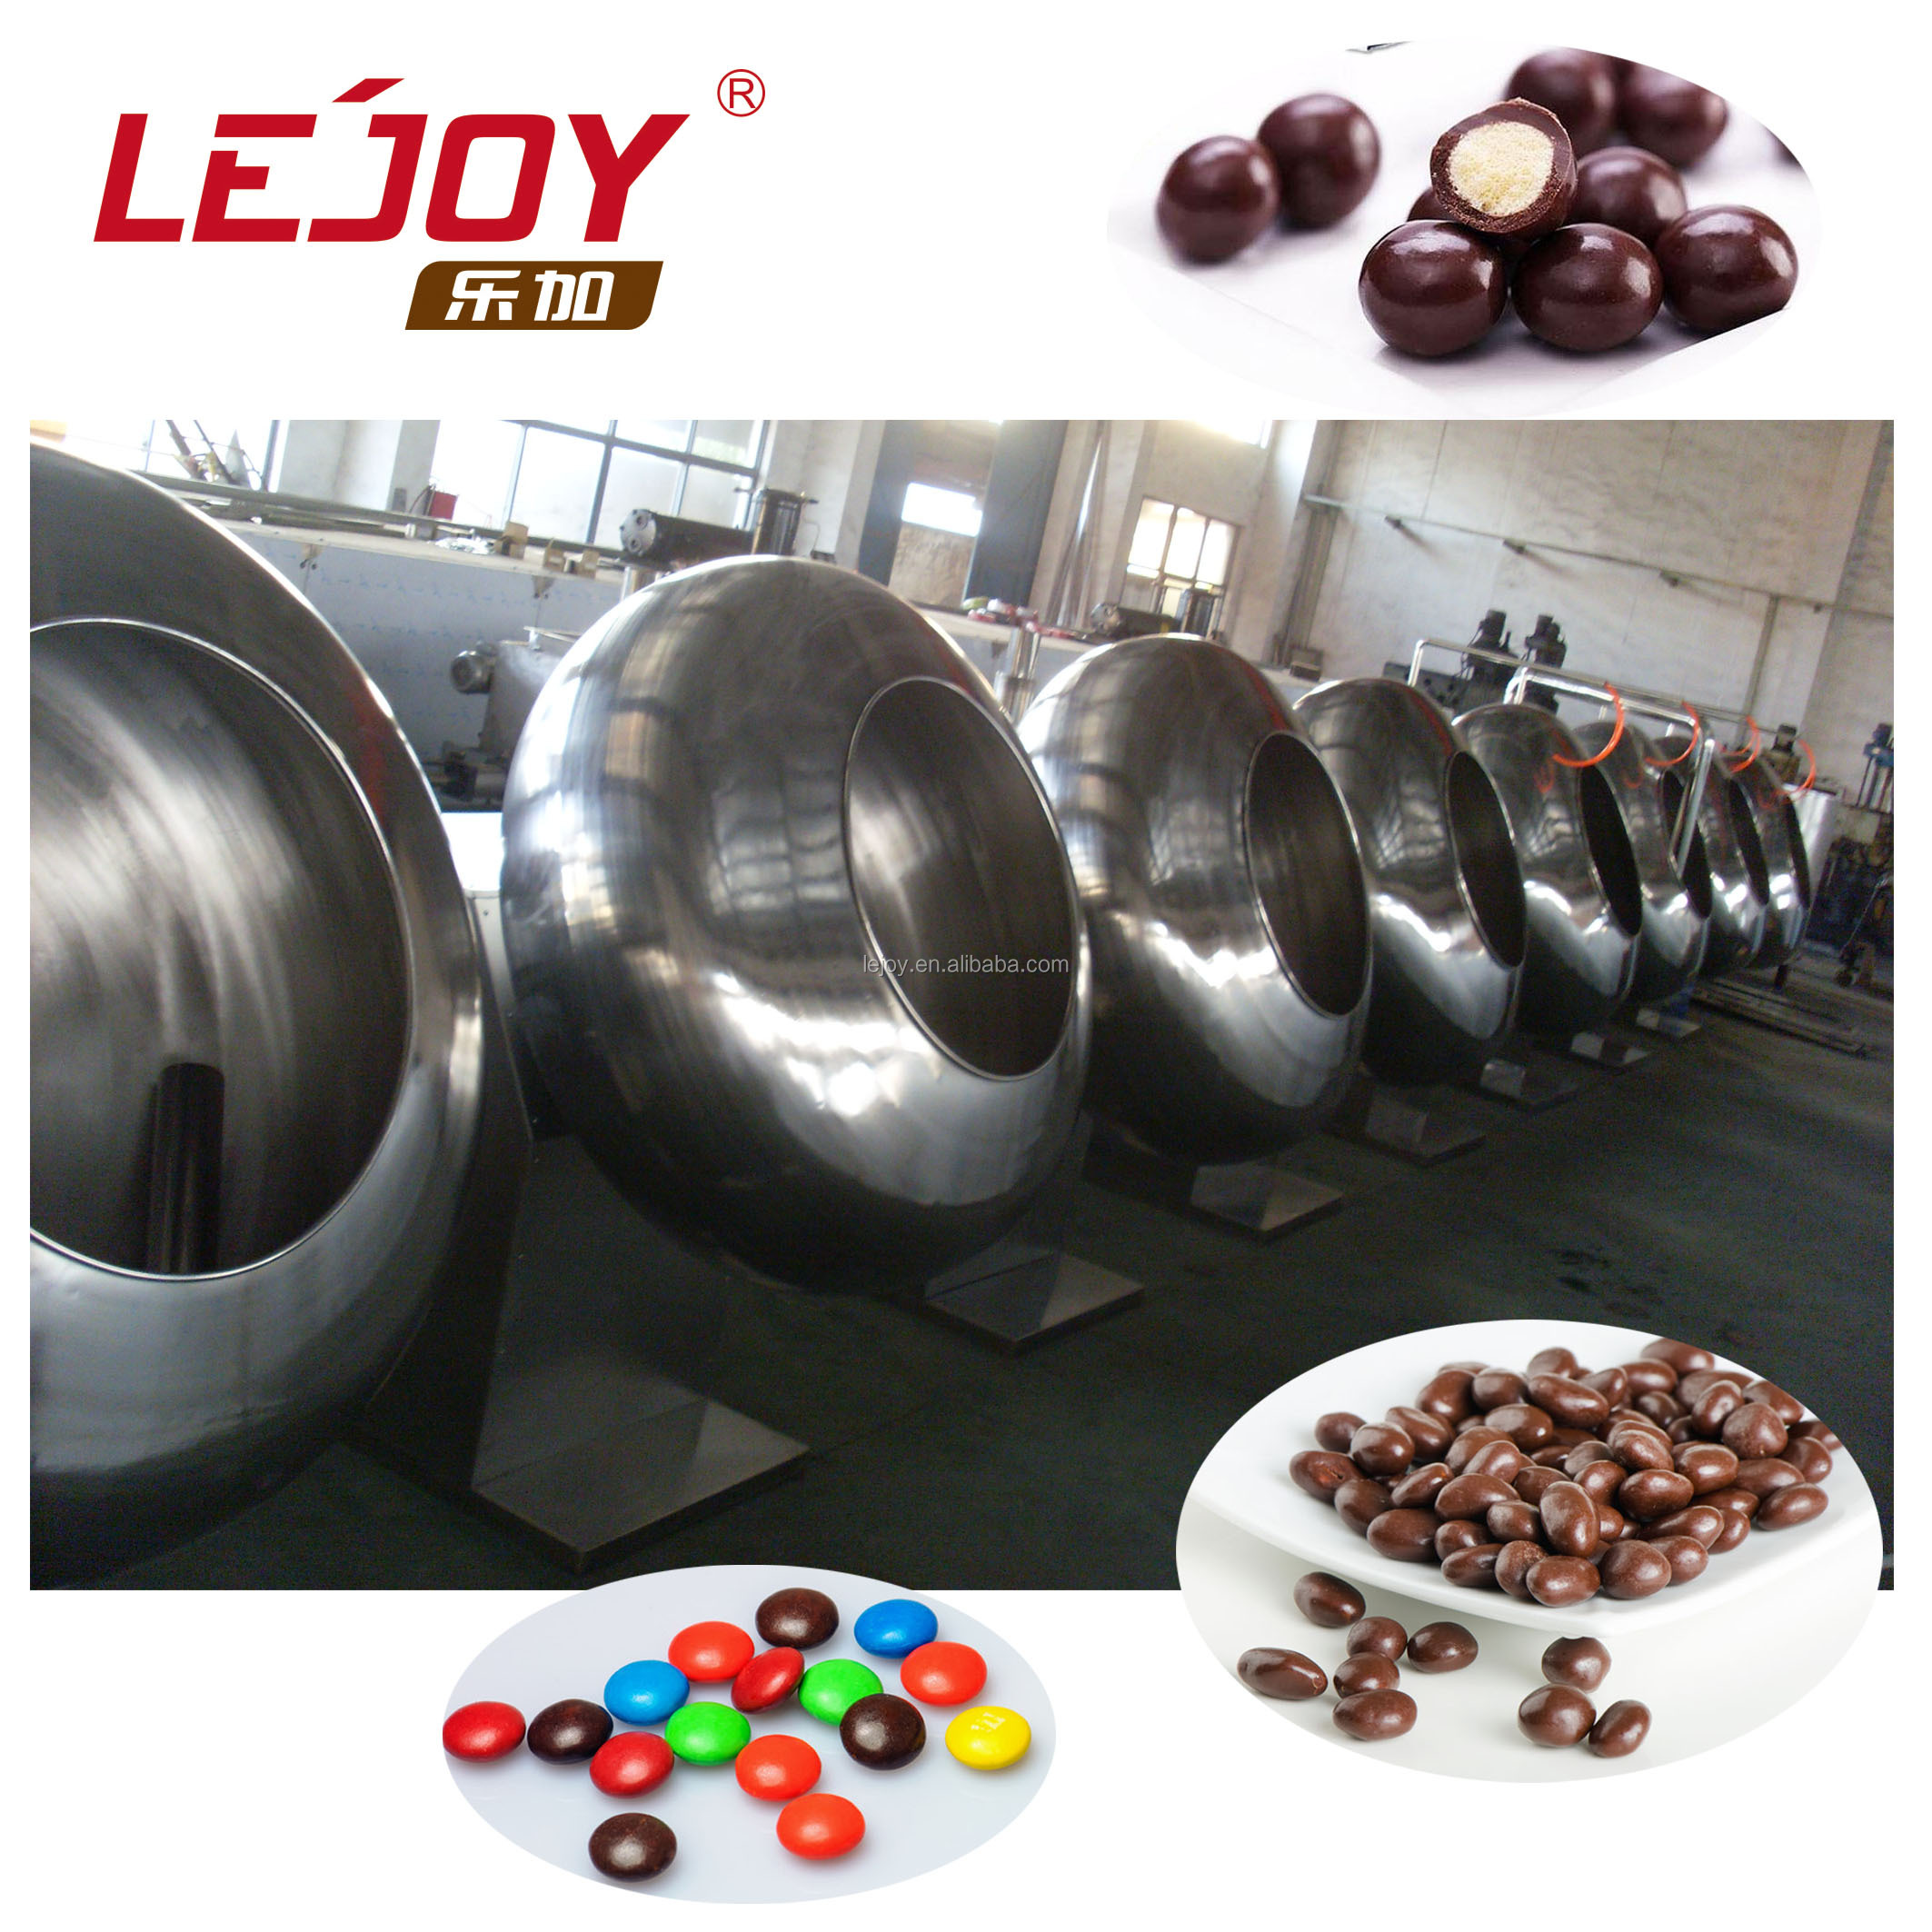 PGJ400 Высококачественные шоколадные орехи.